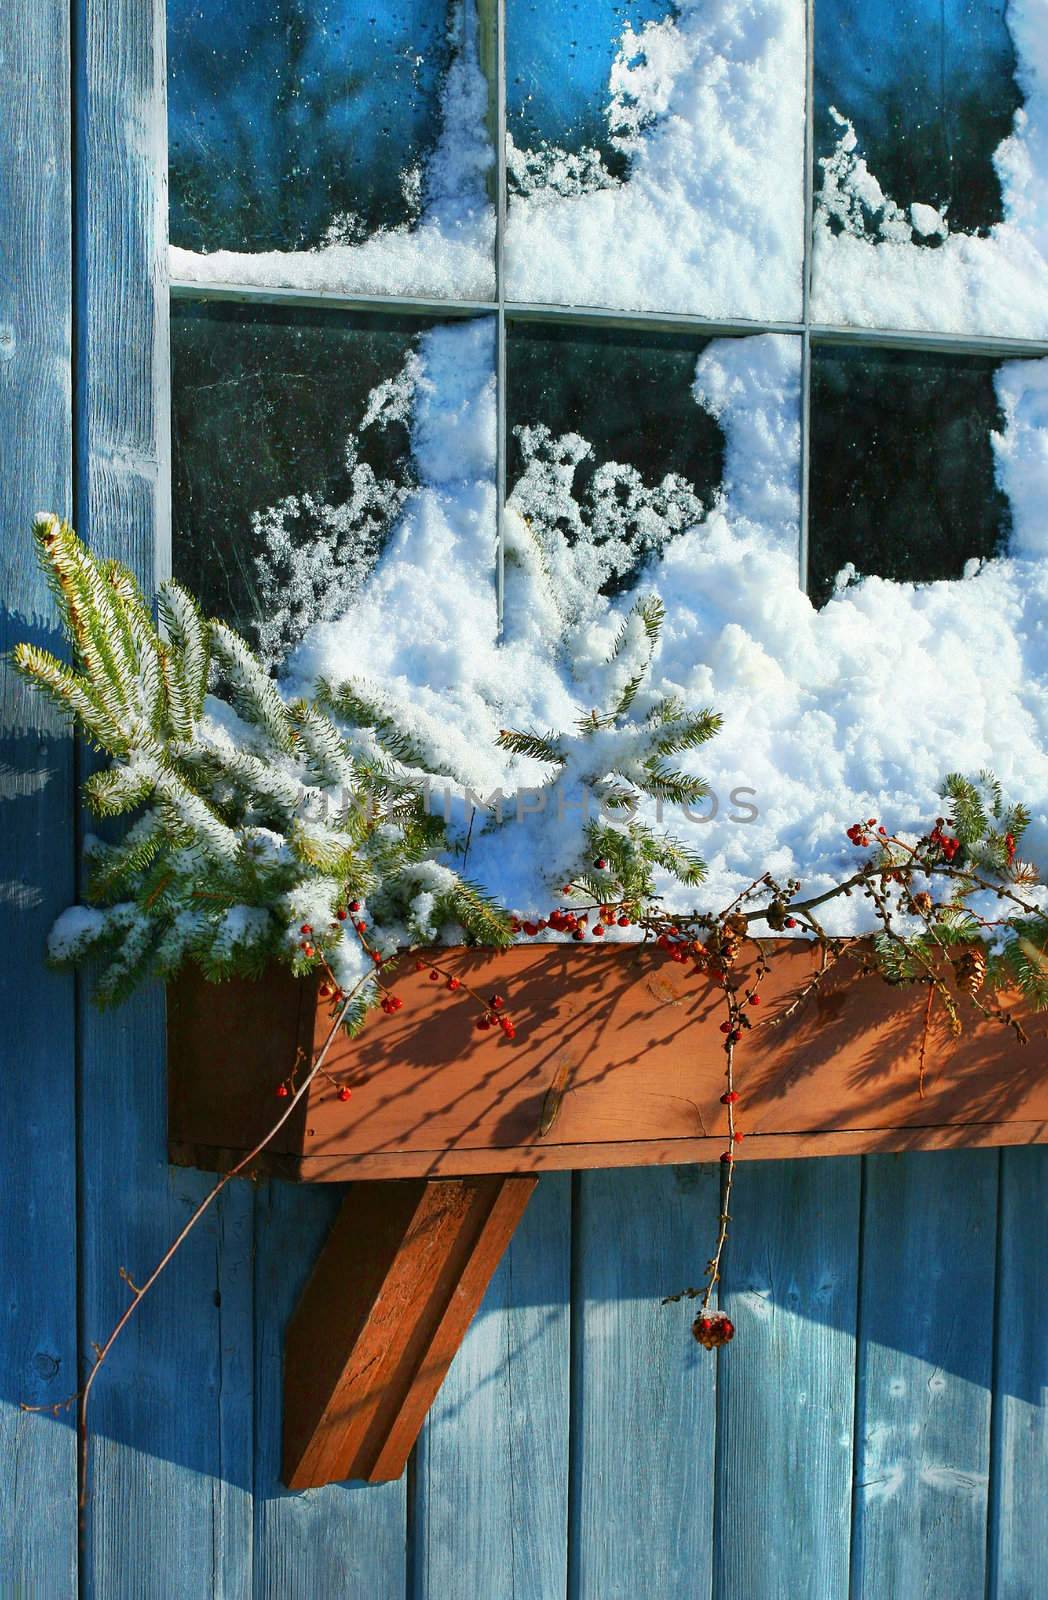 Old window in winter by Sandralise